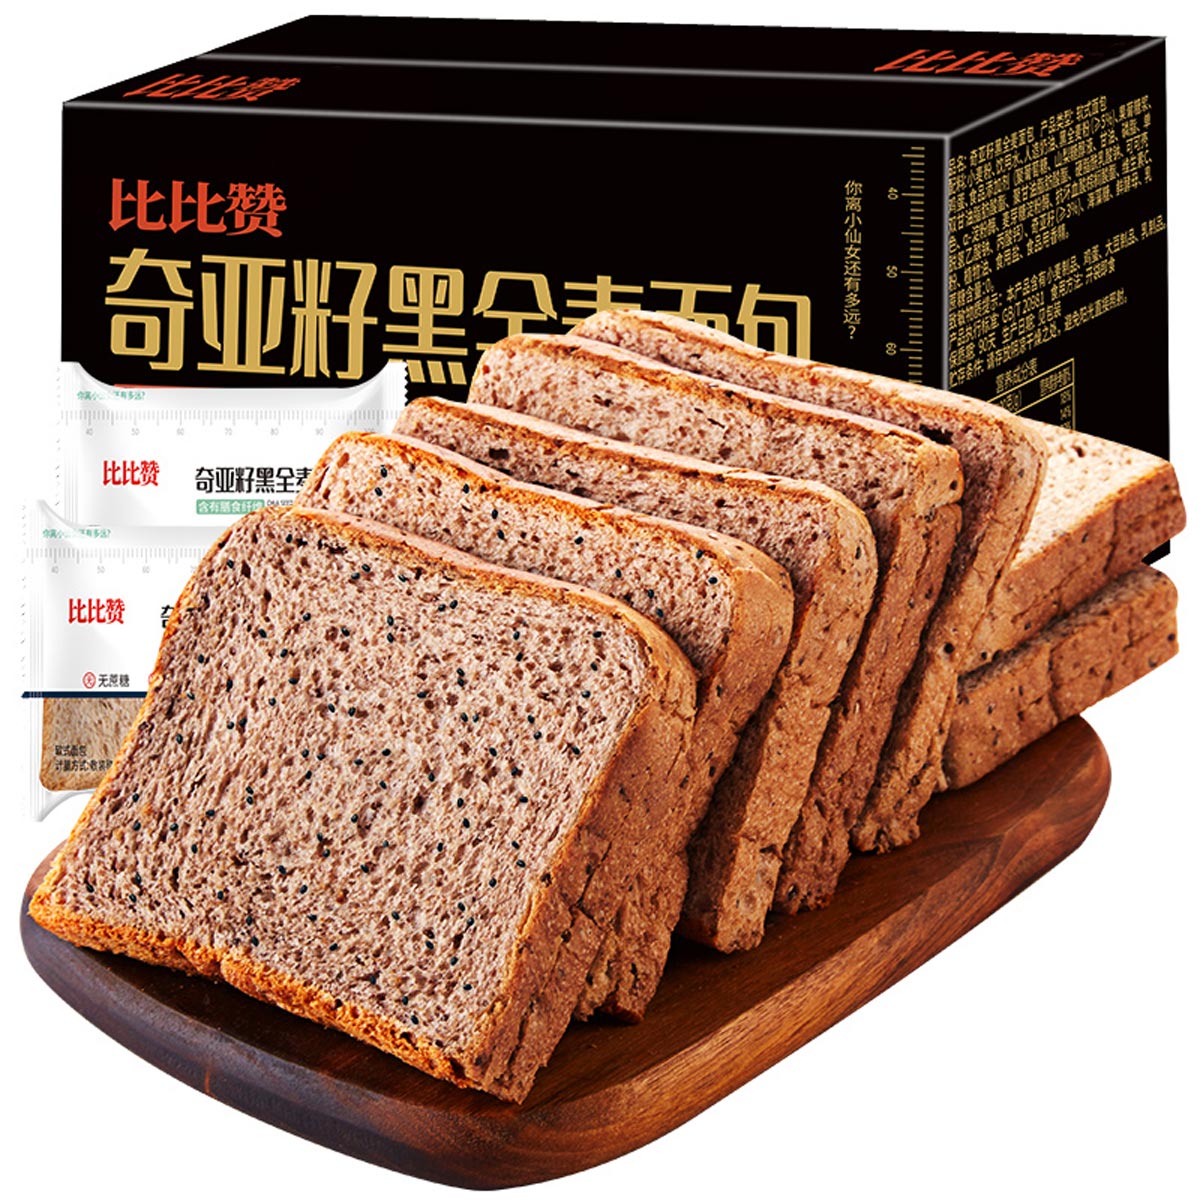 bi bi zan 比比赞 奇亚籽黑全麦面包 1kg 14.9元